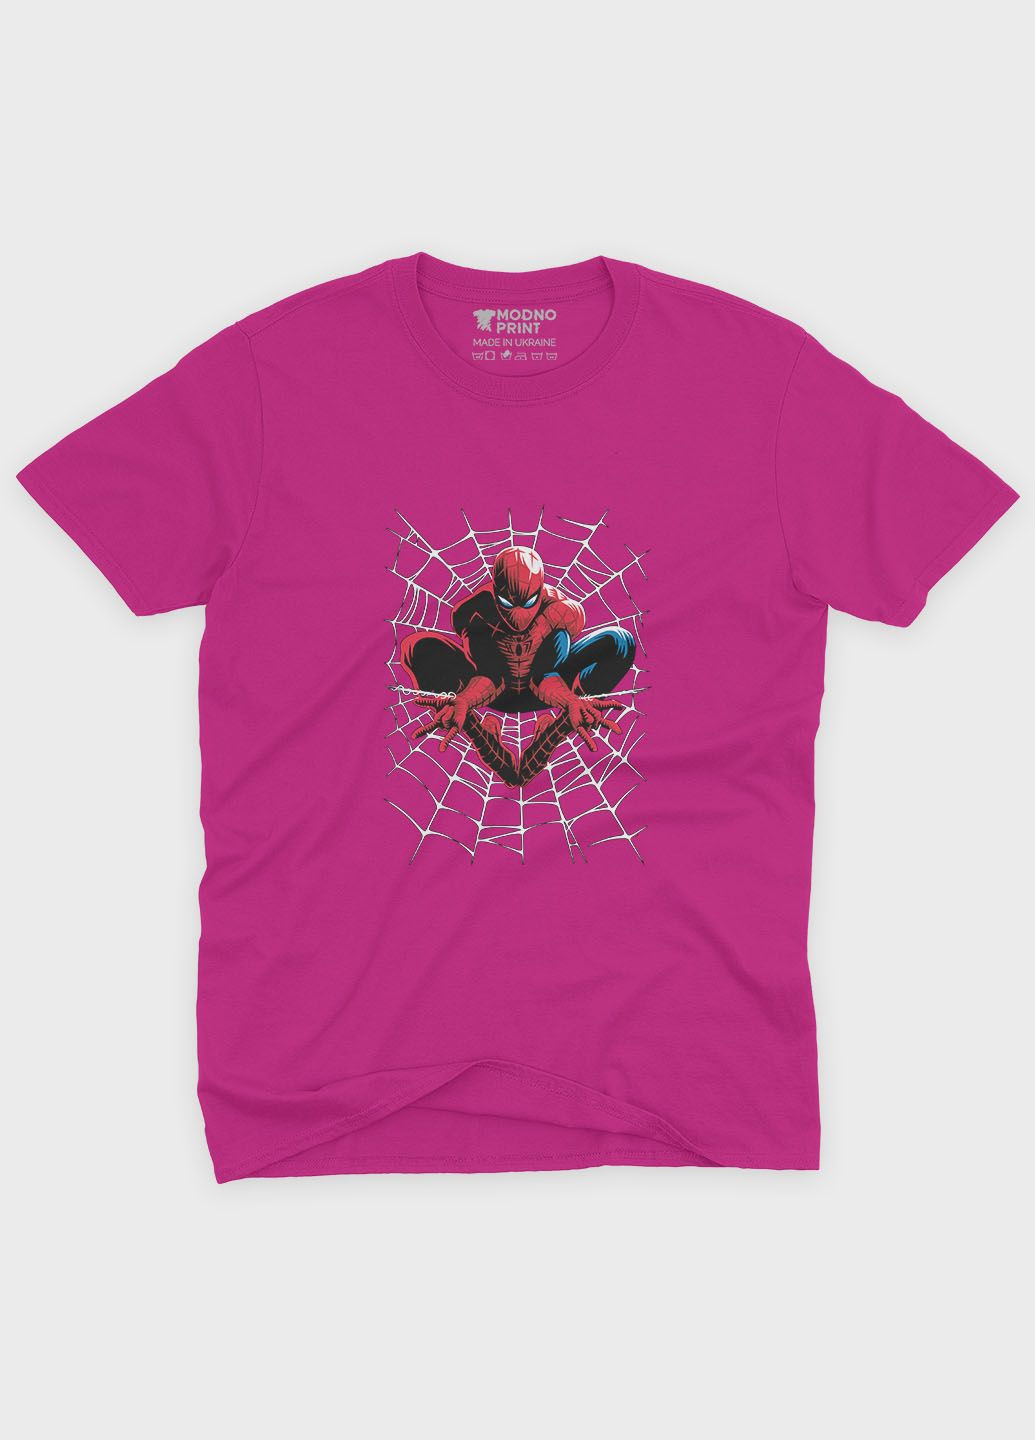 Рожева демісезонна футболка для хлопчика з принтом супергероя - людина-павук (ts001-1-fuxj-006-014-064-b) Modno